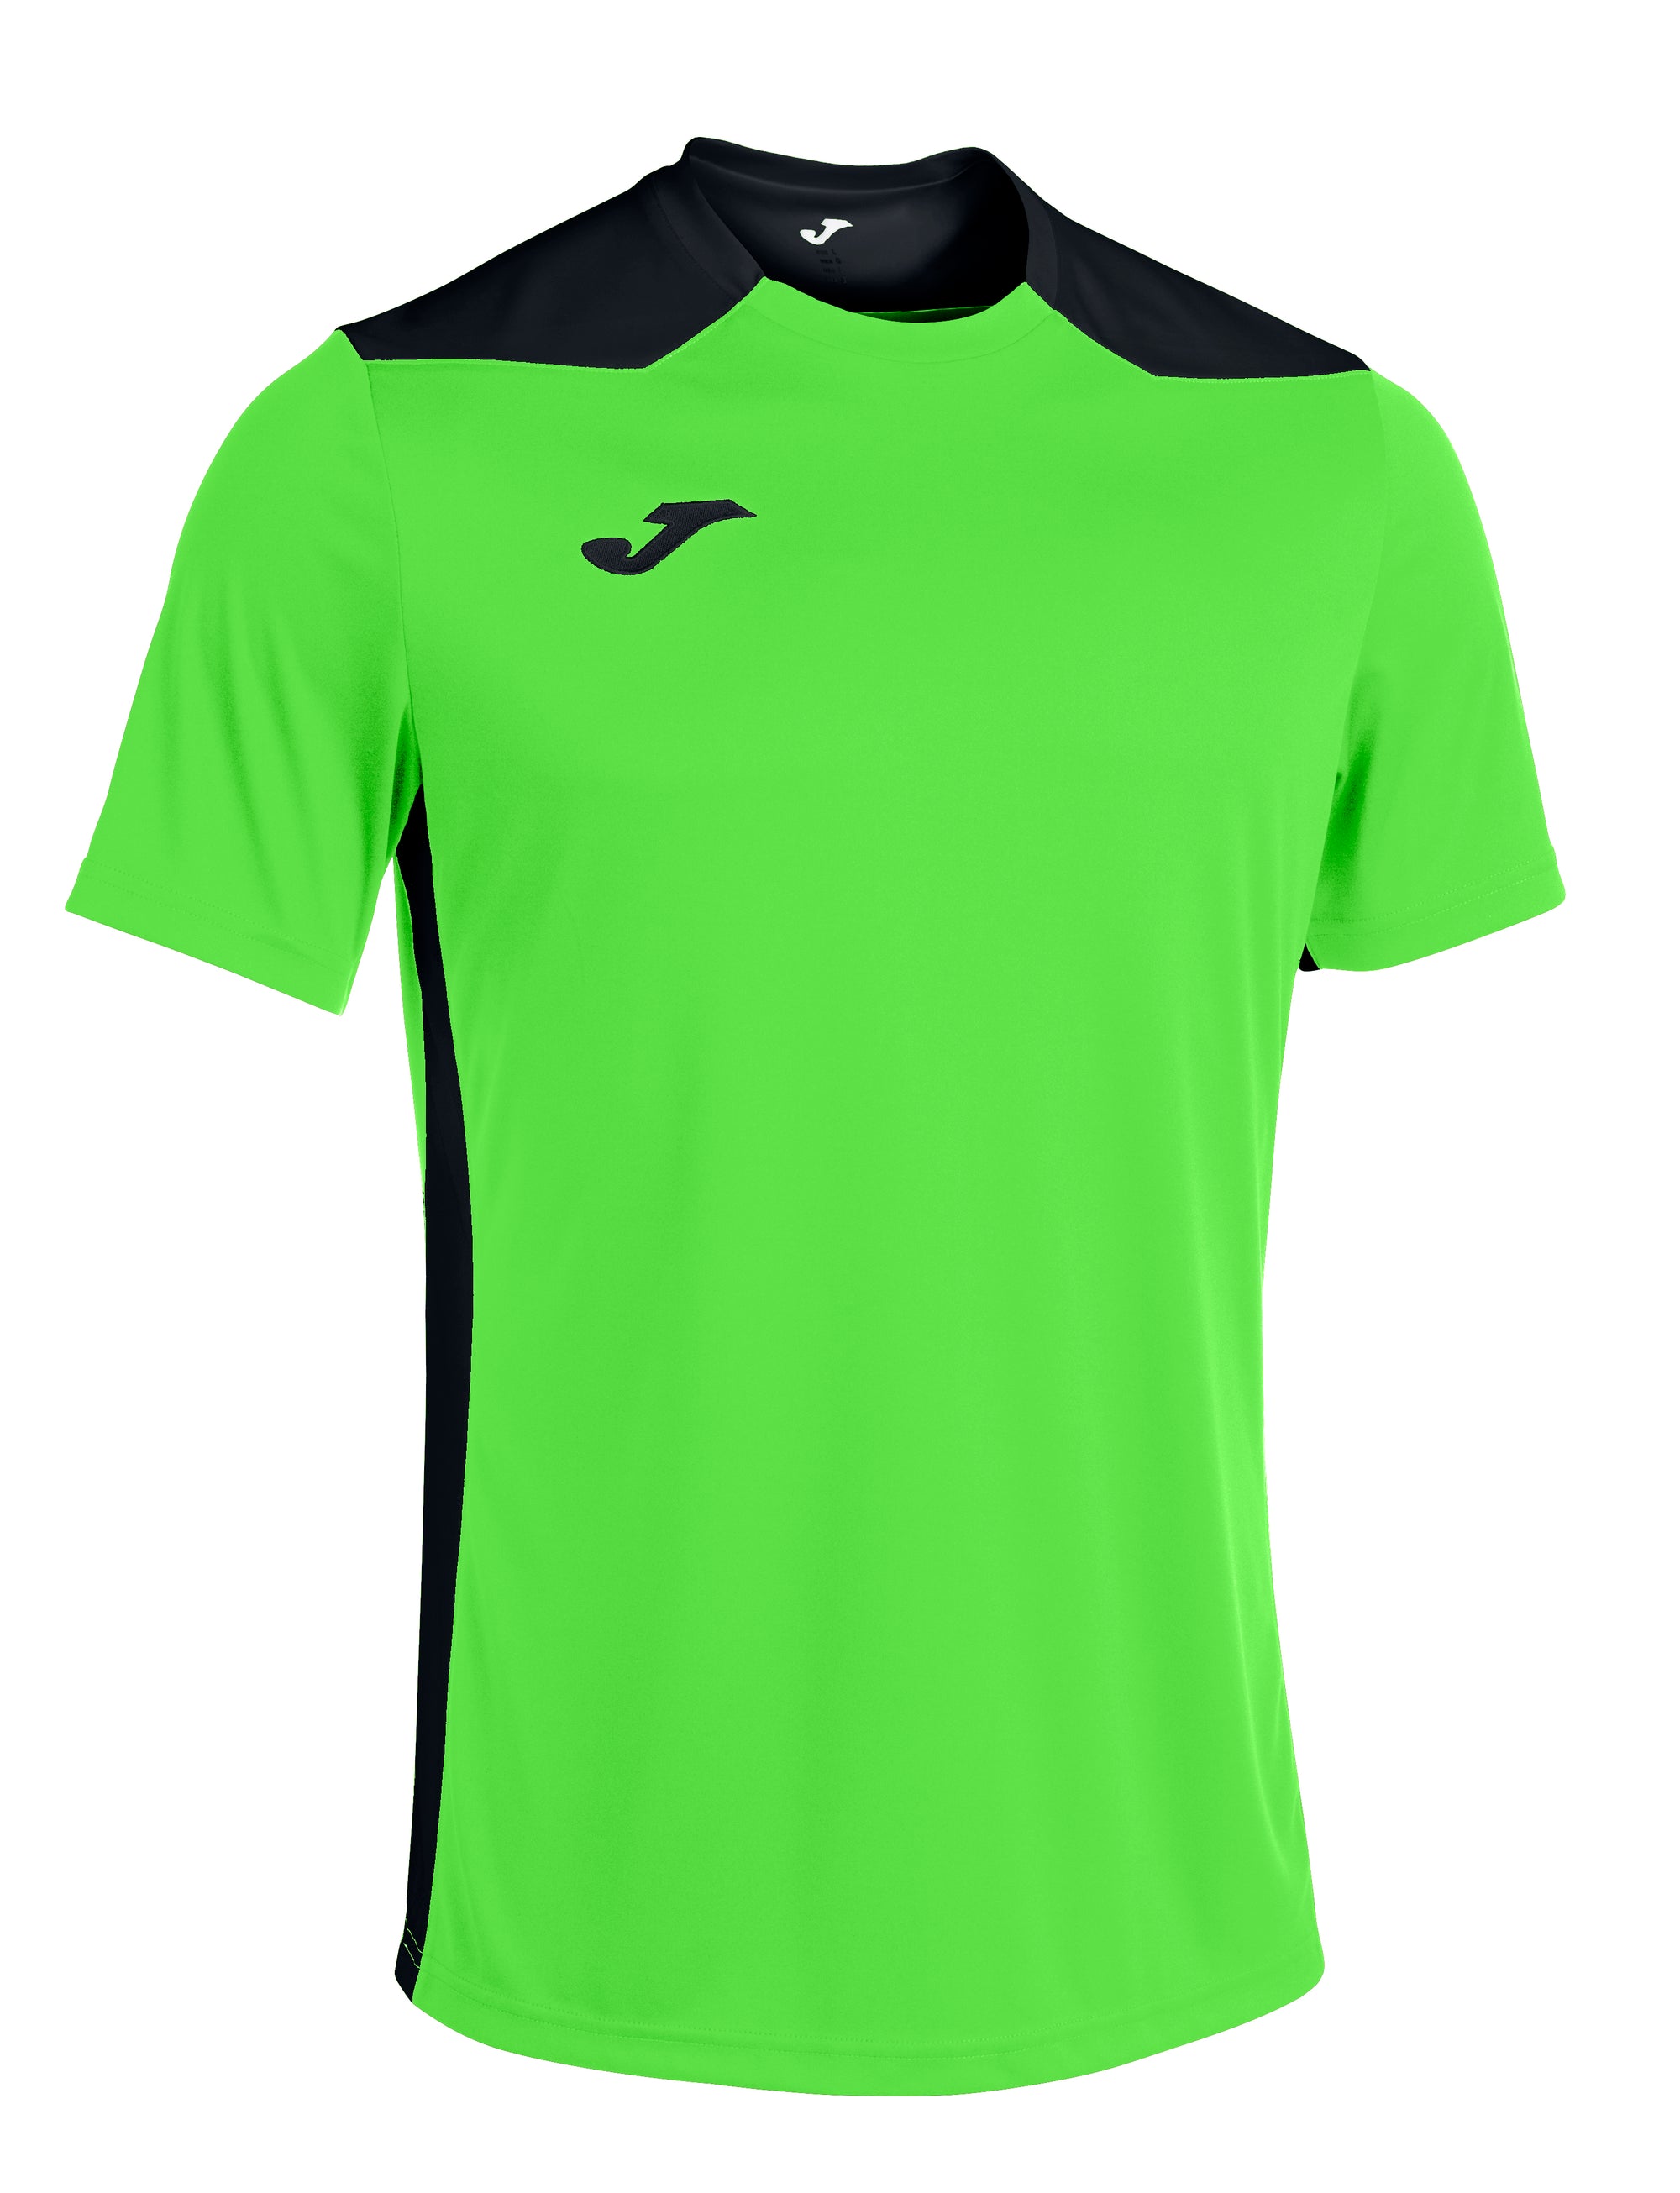 Joma Championship VI Short Sleeved T-Shirt - Green Fluor/Dark Navy